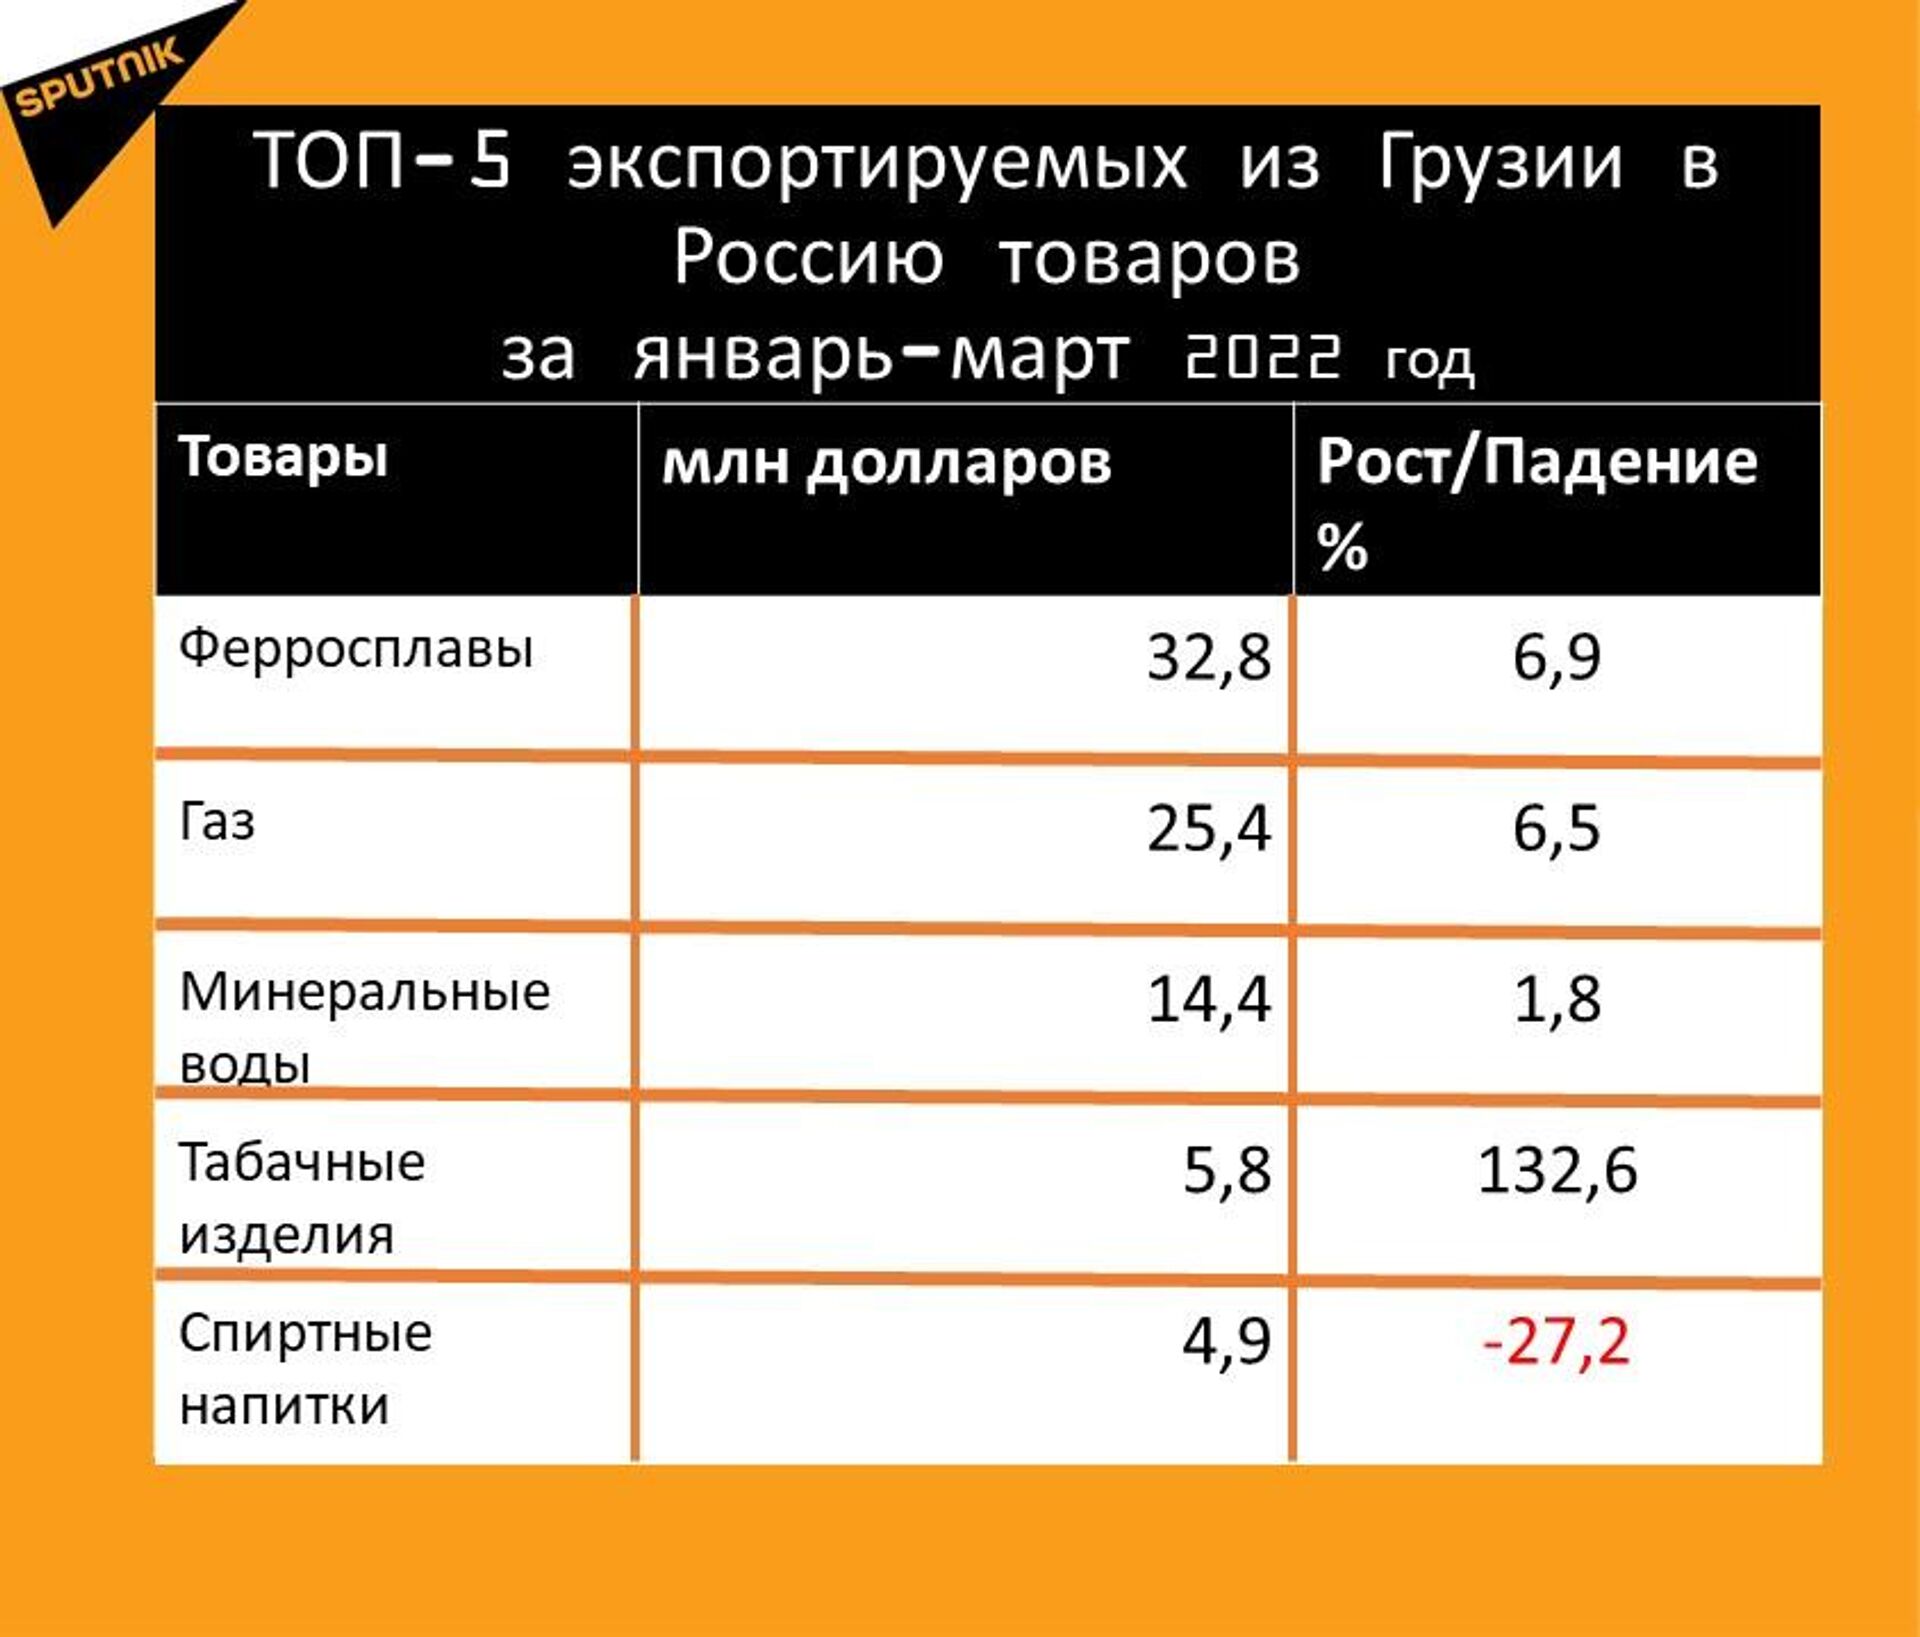 Статистика внешнеторгового оборота Грузии и России за январь-март 2022 год, экспорт - Sputnik Грузия, 1920, 23.04.2022